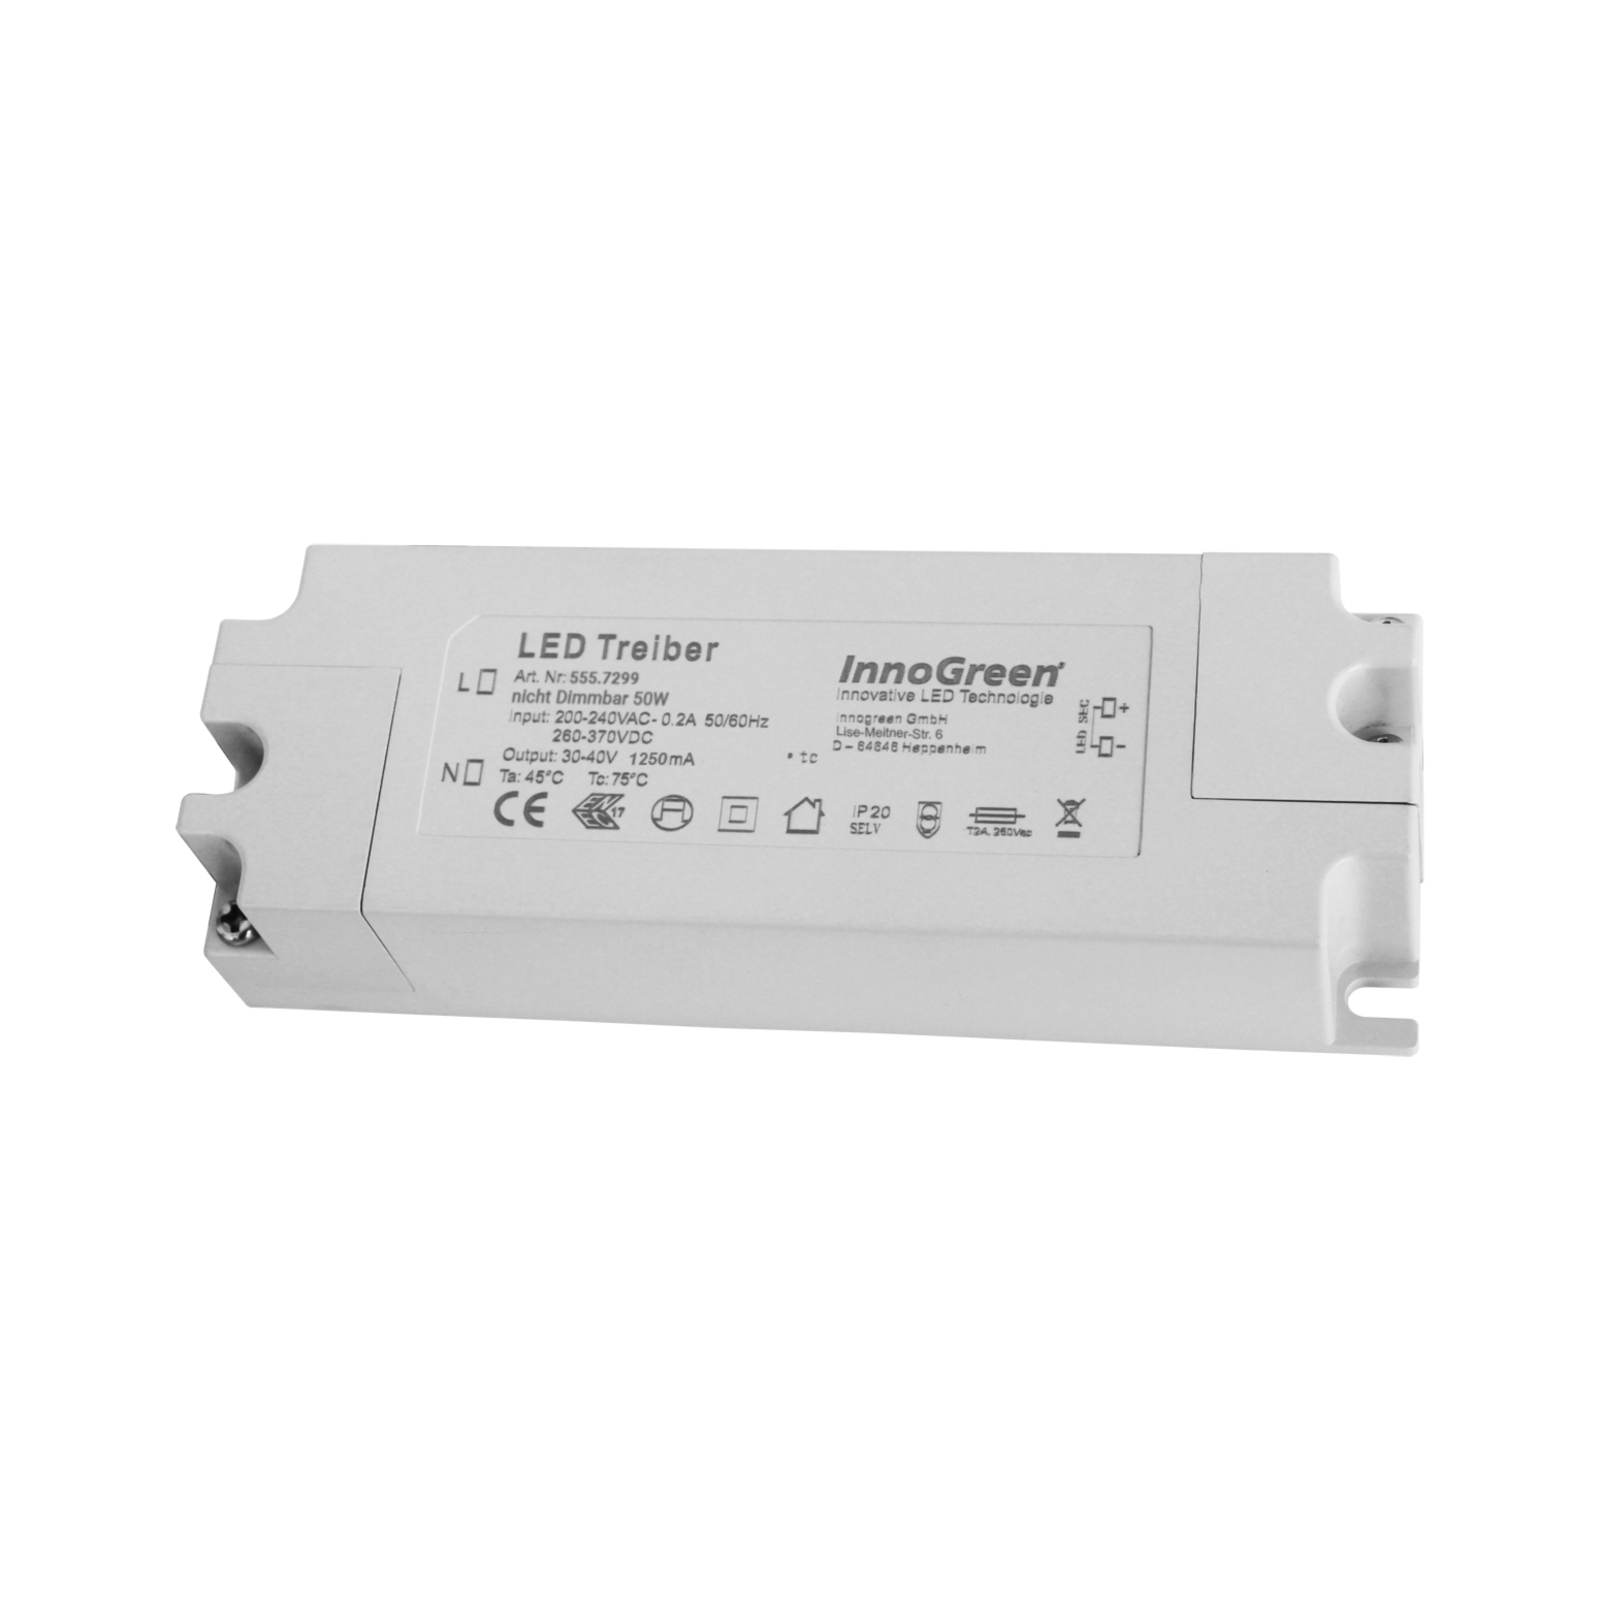 InnoGreen Transformador LED 220-240 V(AC/DC) 50W